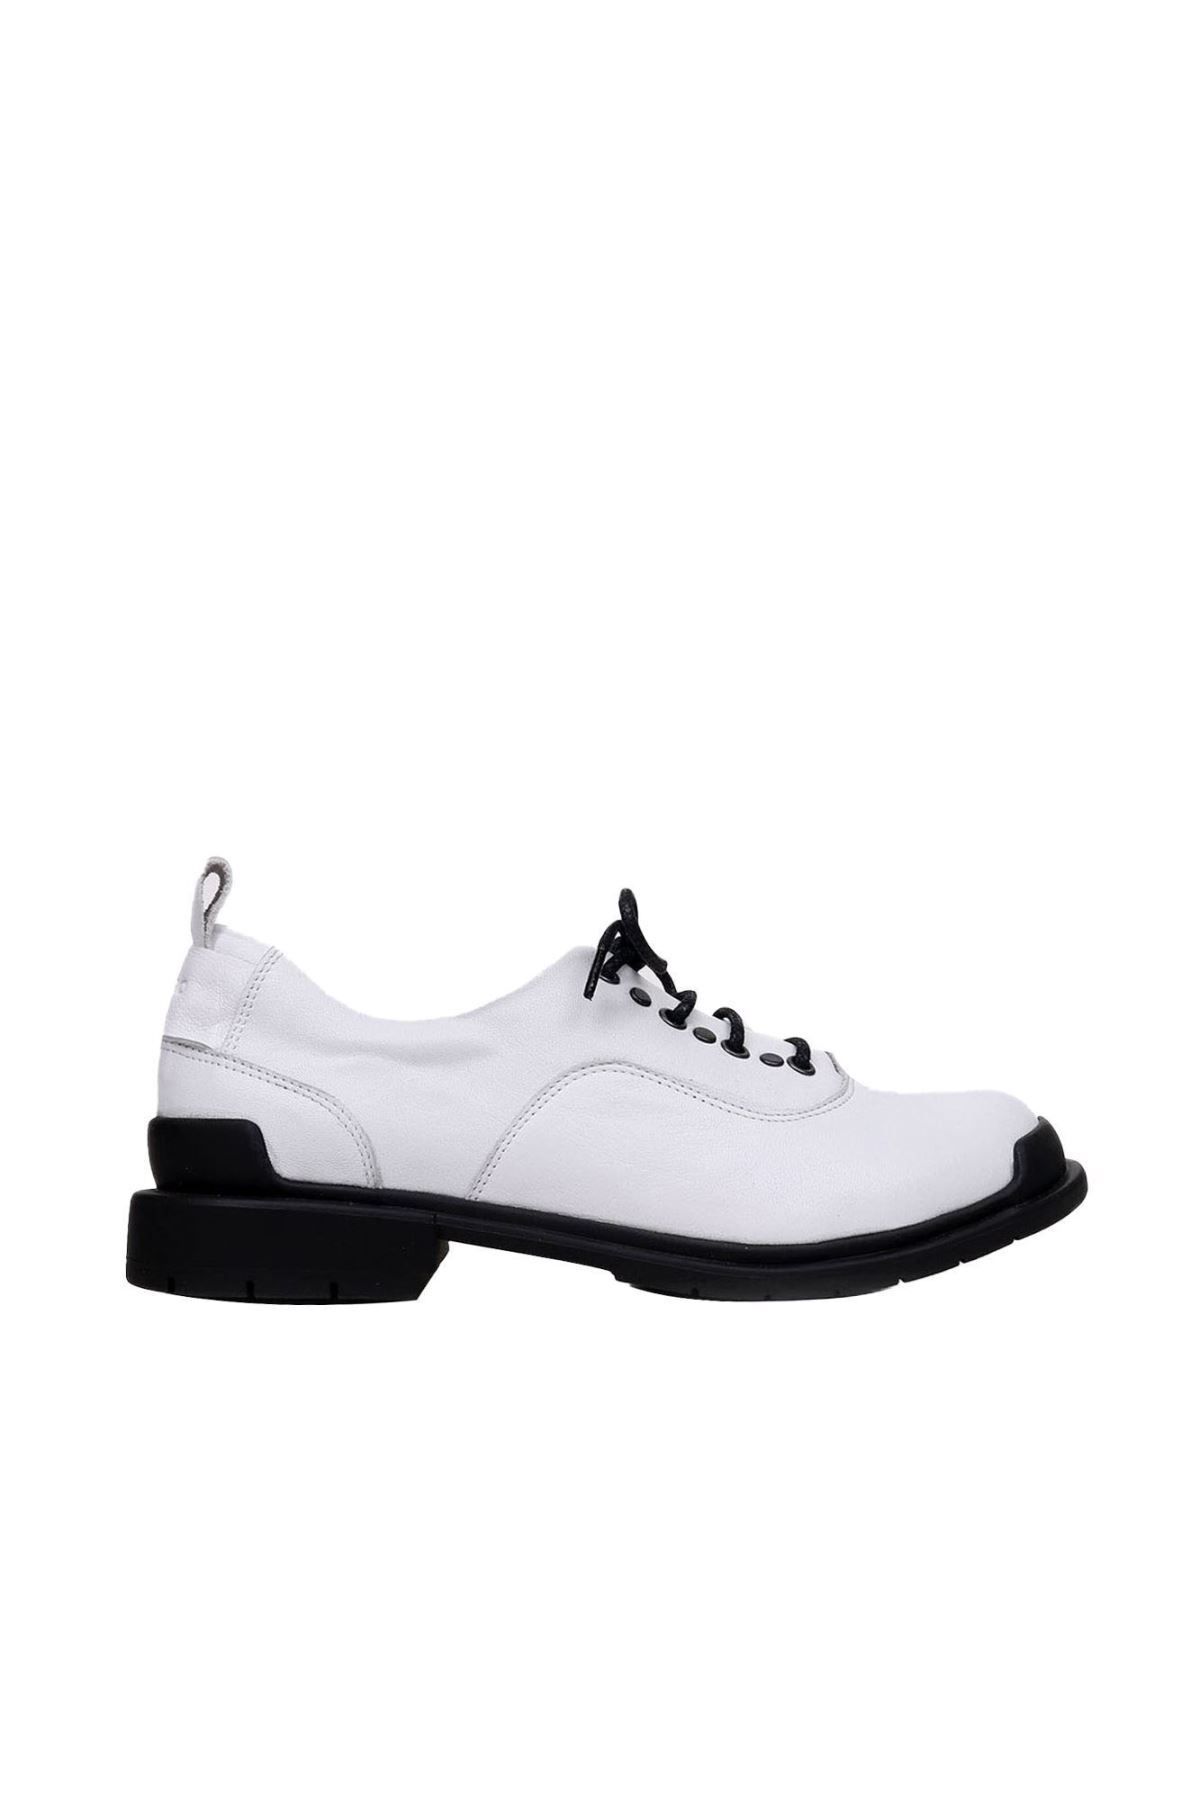 BUENO Shoes Beyaz Deri Kadın Az Topuklu Ayakkabı